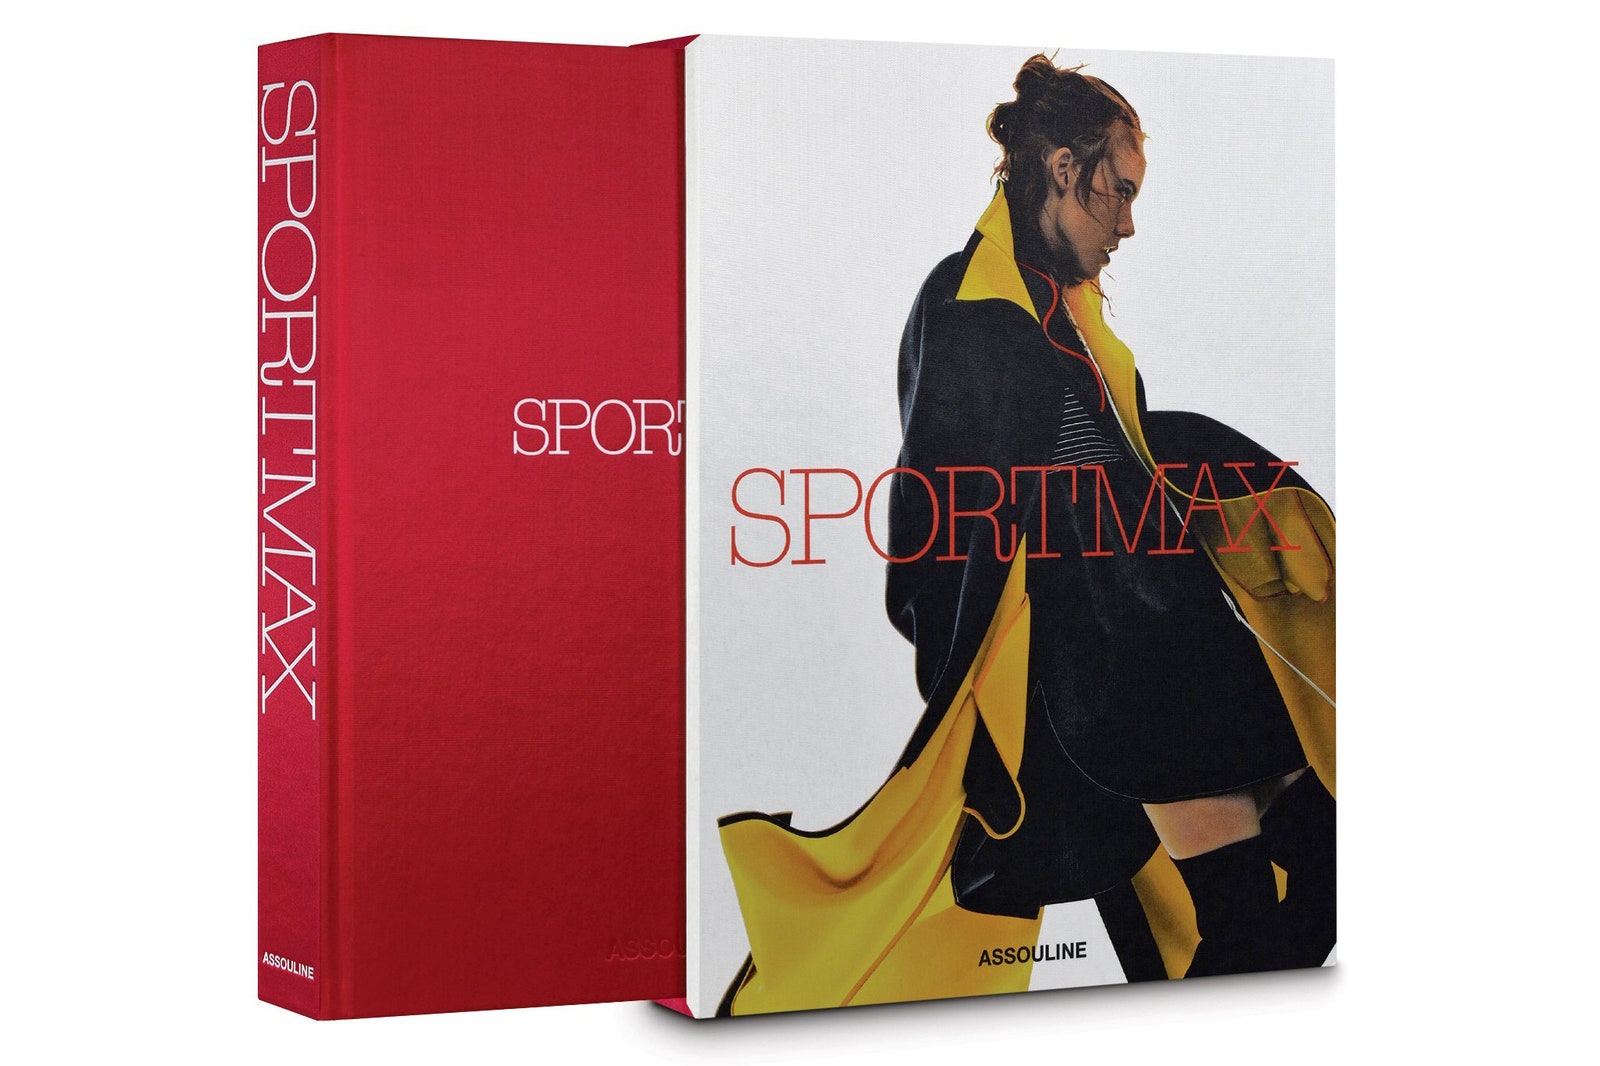 Sportmax отмечают 50летие объемной настольной книгой